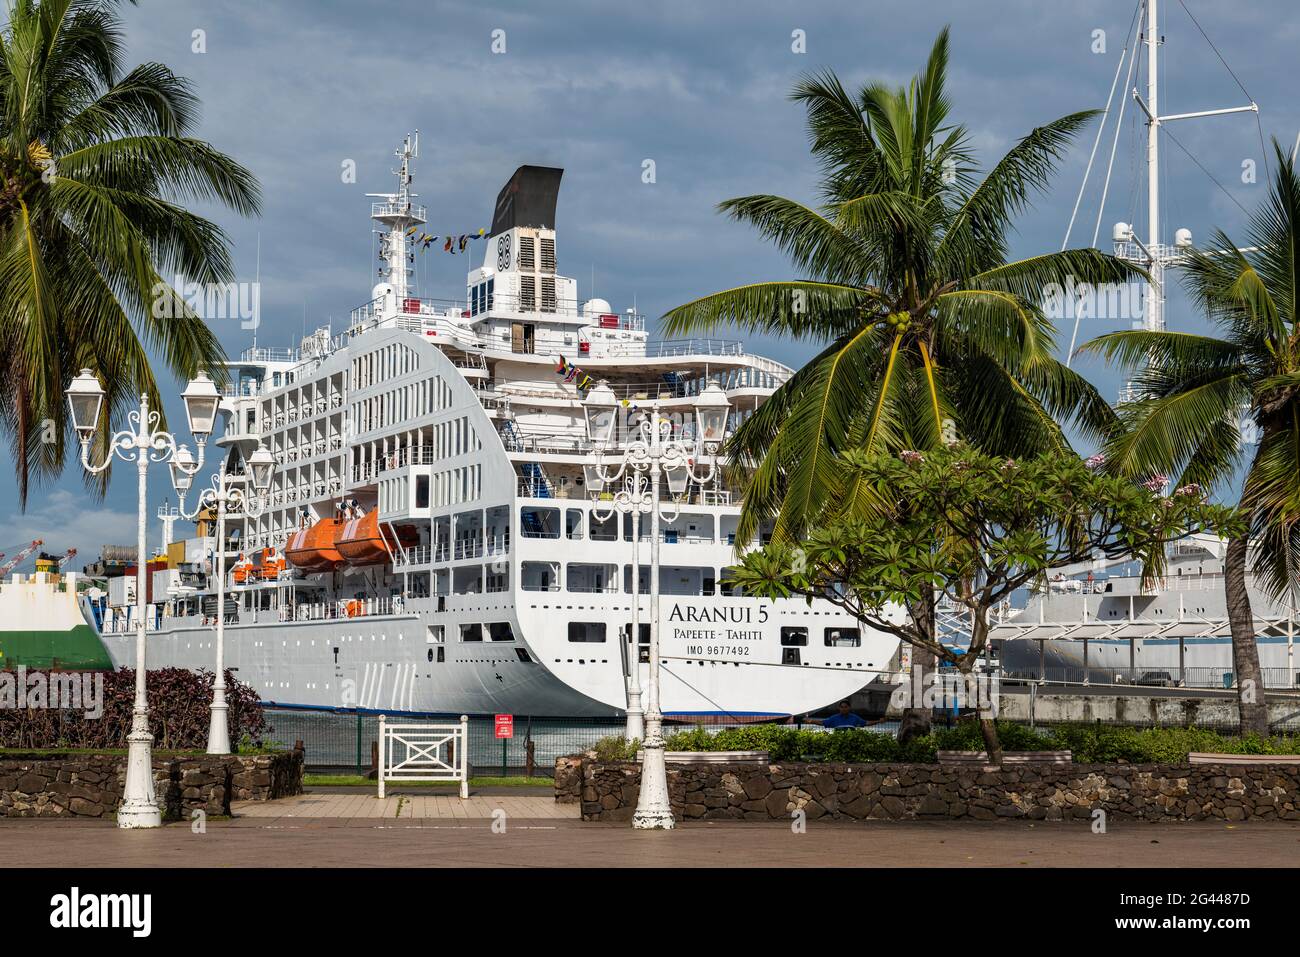 Palmiers sur la promenade du port et cargo de passagers Aranui 5 (Aranui  Cruises) sur la jetée, Papeete, Tahiti, les îles du vent, Polynésie  française Photo Stock - Alamy